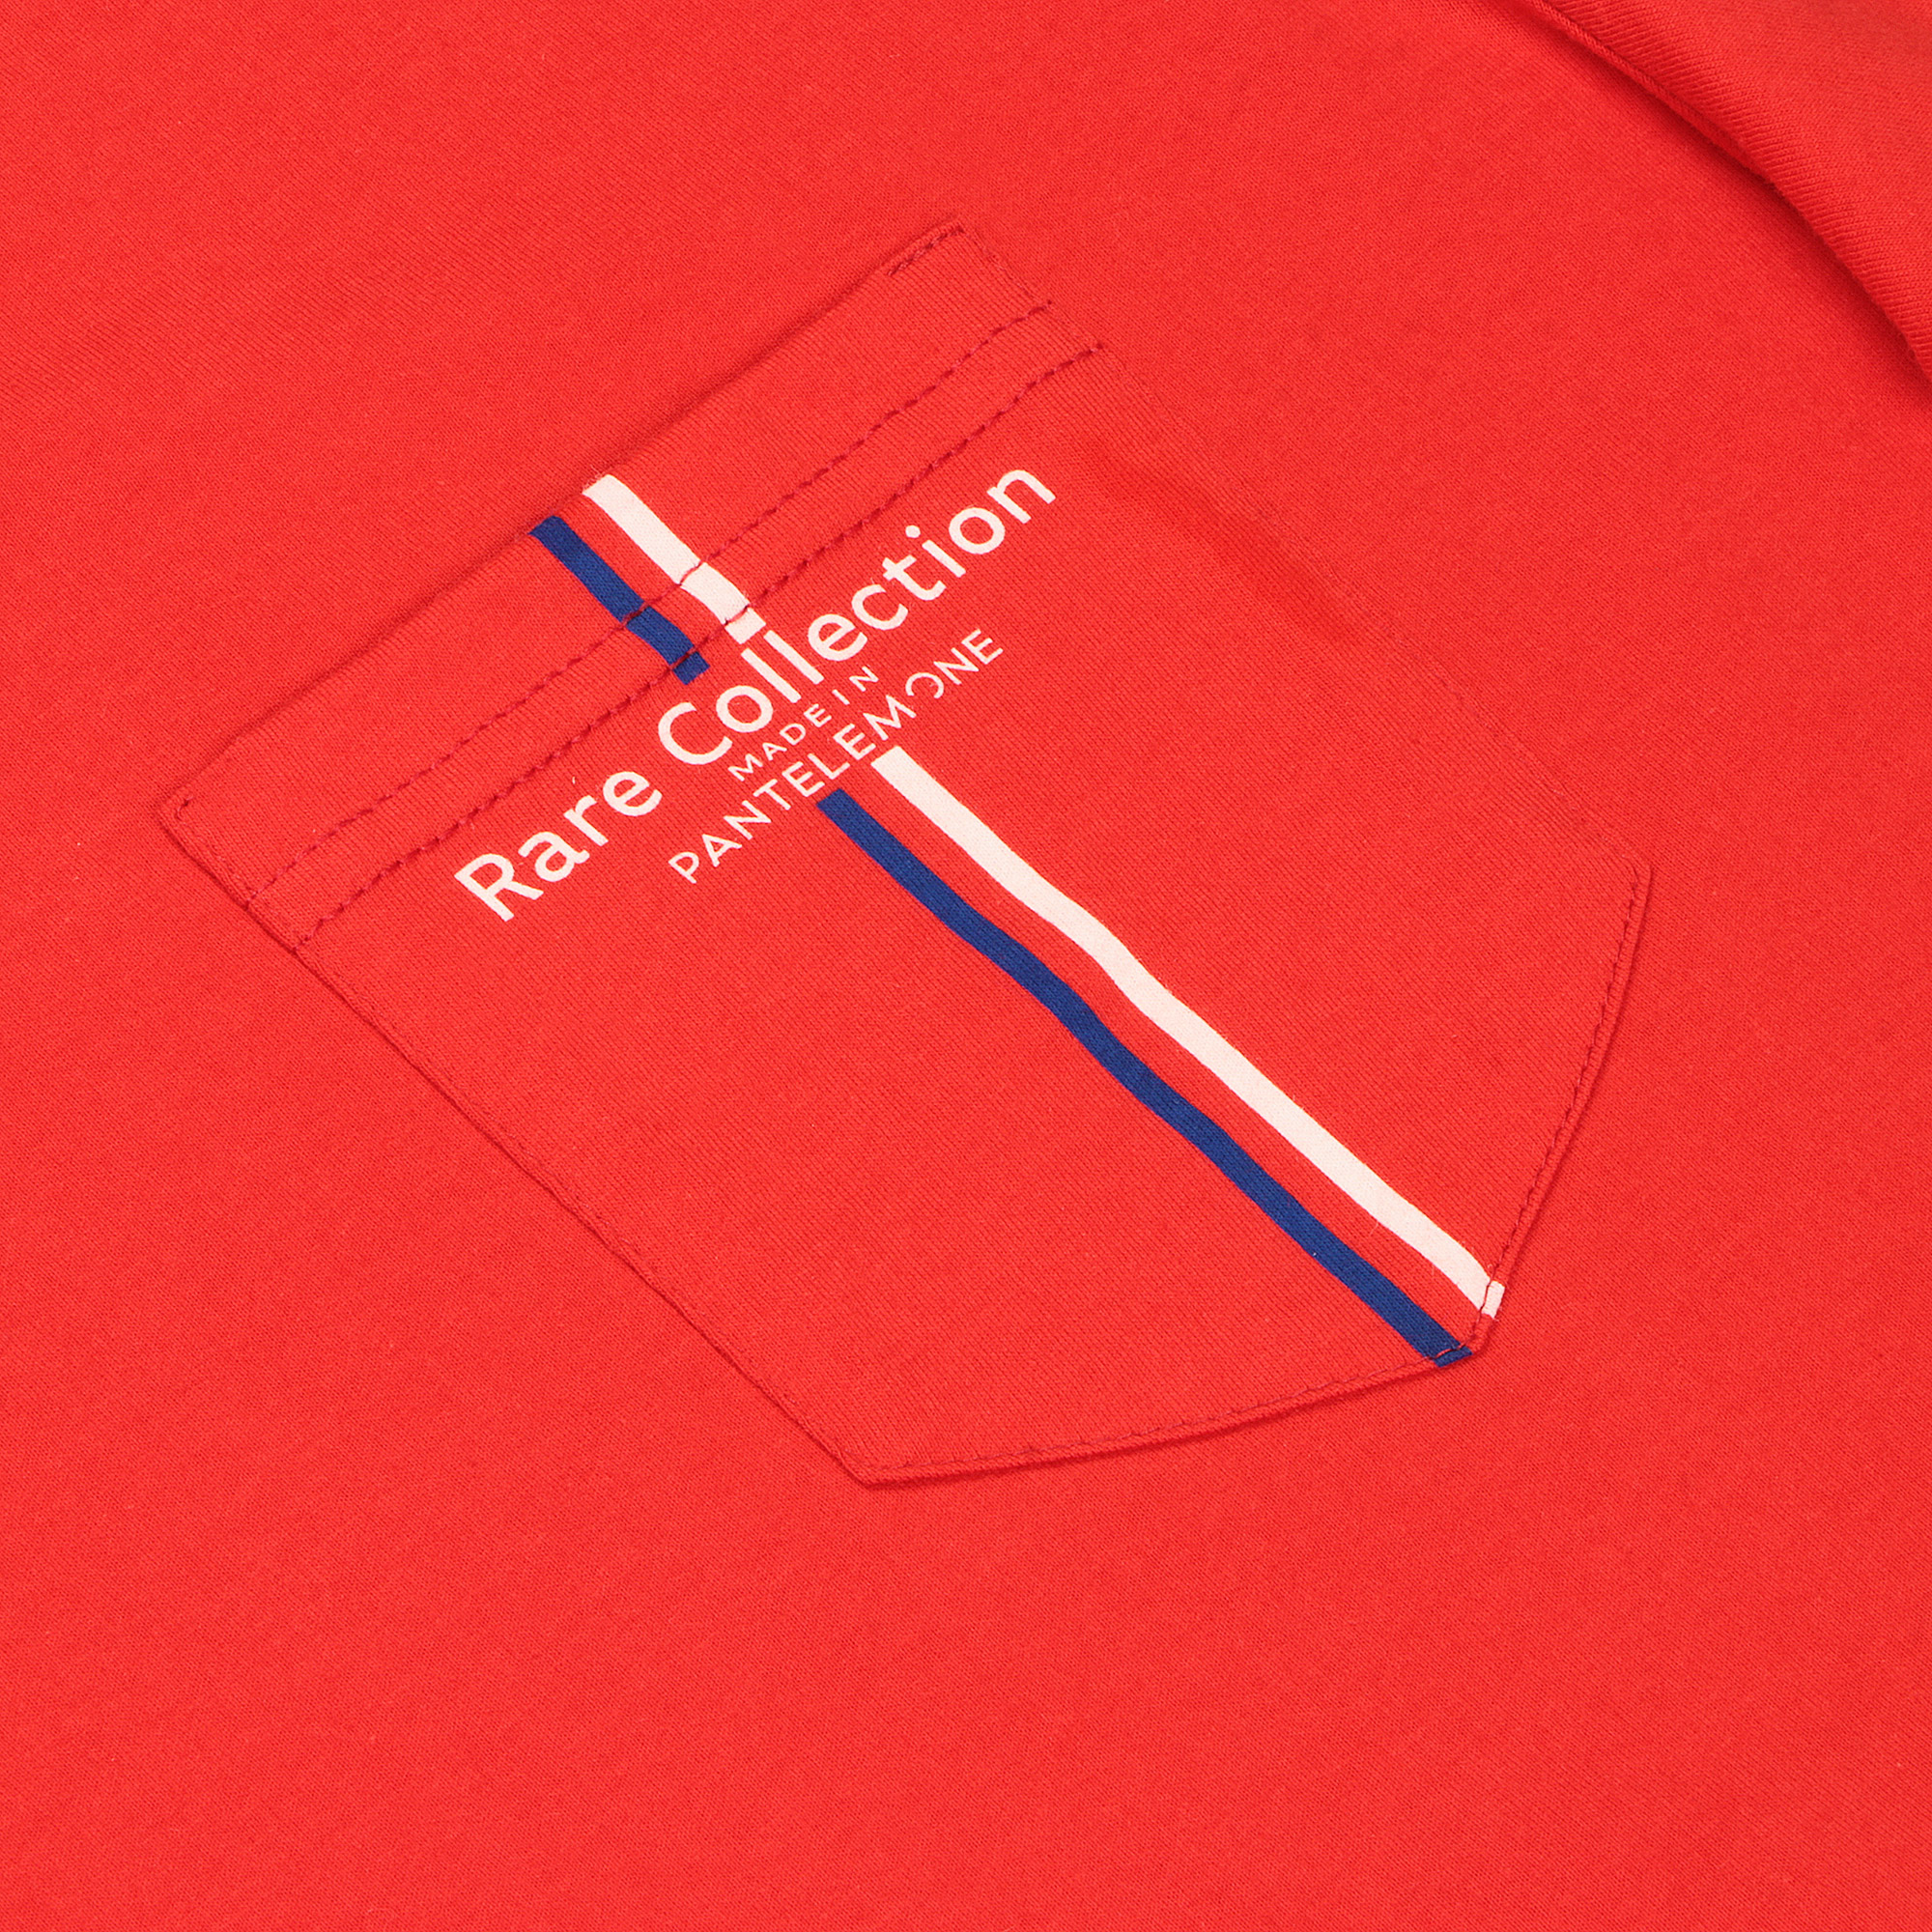 Мужская футболка Pantelemone MF-898 красная 50, цвет красный, размер 50 - фото 2